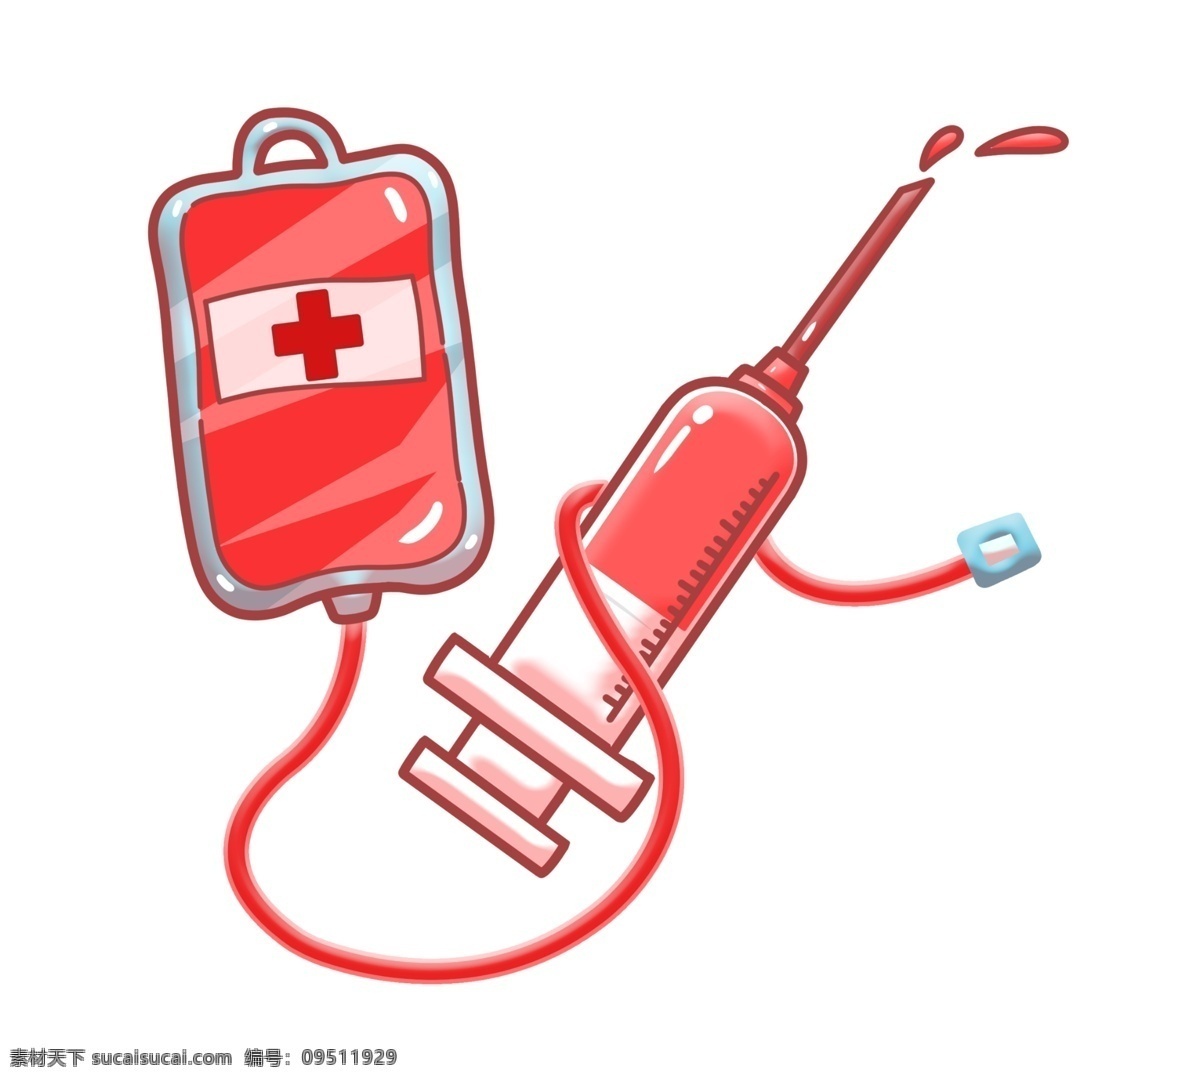 血液 袋 针管 插画 一袋血 血液袋 医疗 输血治疗 血液插图 一袋血插图 注射器